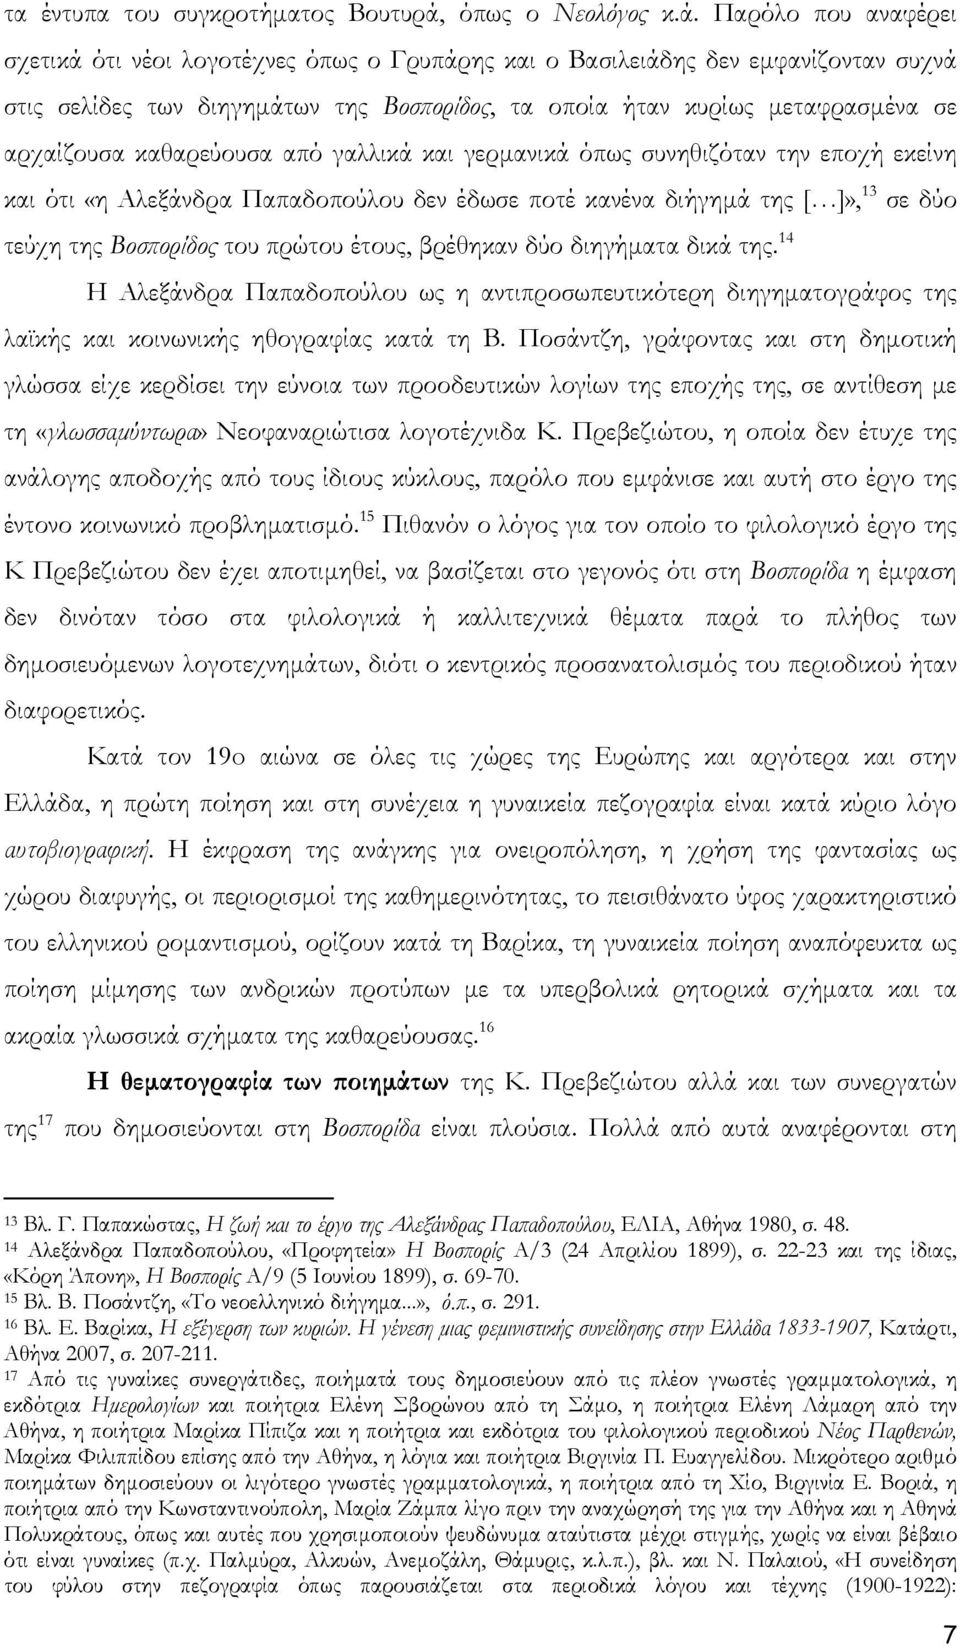 Παρόλο που αναφέρει σχετικά ότι νέοι λογοτέχνες όπως ο Γρυπάρης και ο Βασιλειάδης δεν εμφανίζονταν συχνά στις σελίδες των διηγημάτων της Βοσπορίδος, τα οποία ήταν κυρίως μεταφρασμένα σε αρχαίζουσα